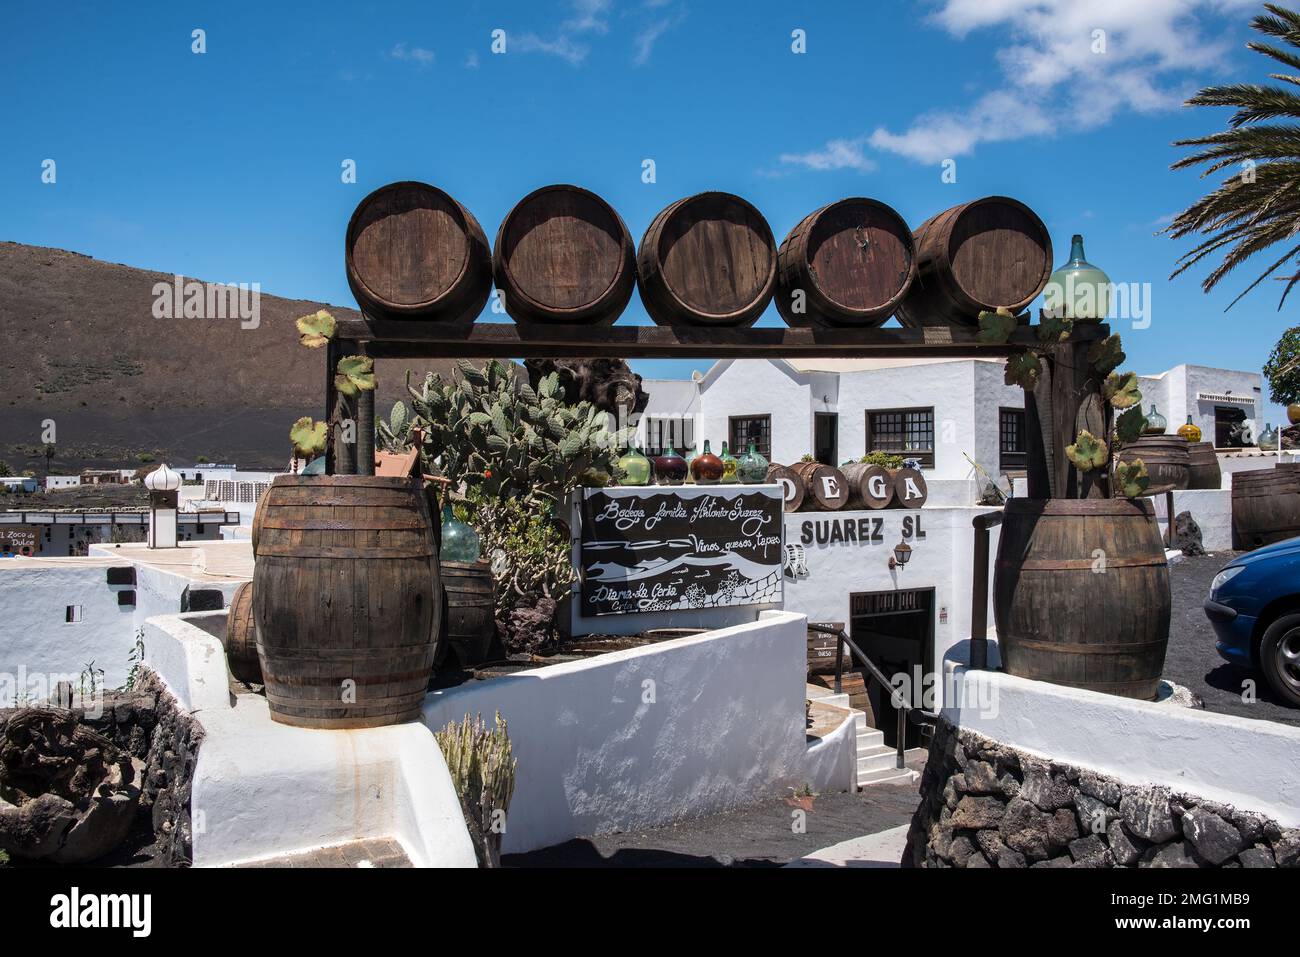 The Antonio Suarez Bodega in La Geria wine growing region of Lanzarote, Canary Islands Stock Photo